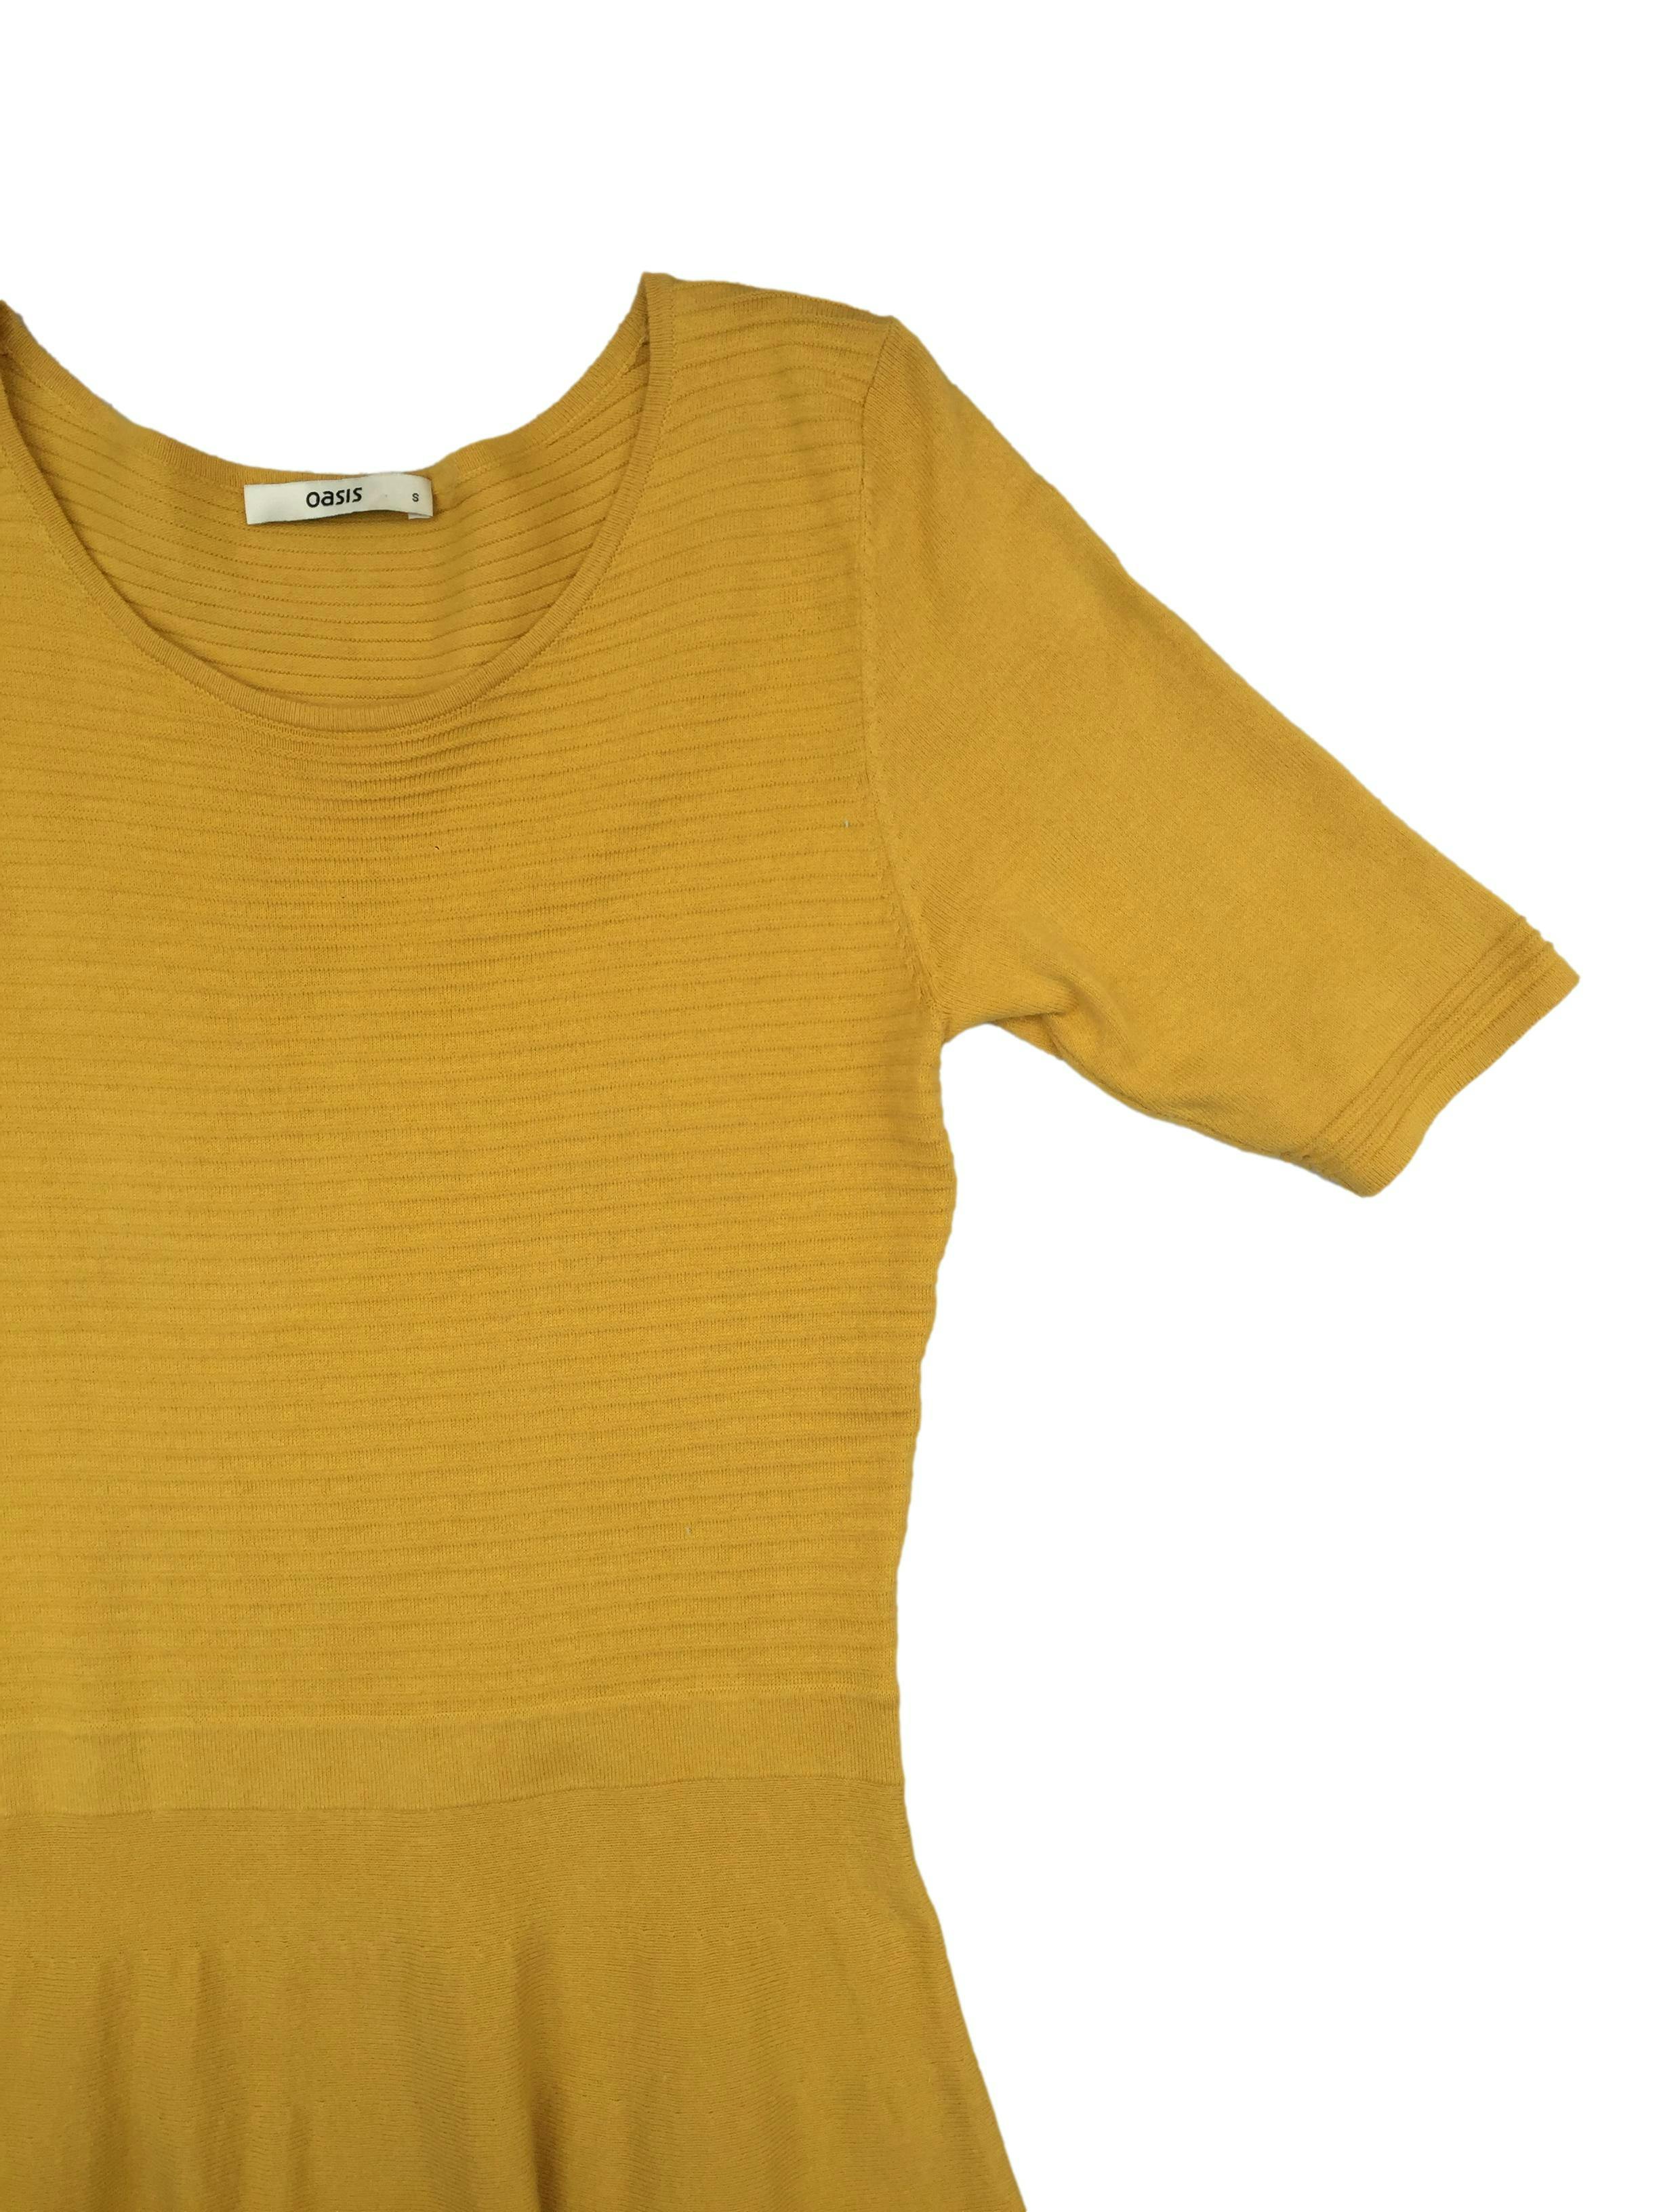 Vestido knit mostaza 80% algodón con textura acanalada. Busto 84cm, Largo 105cm.